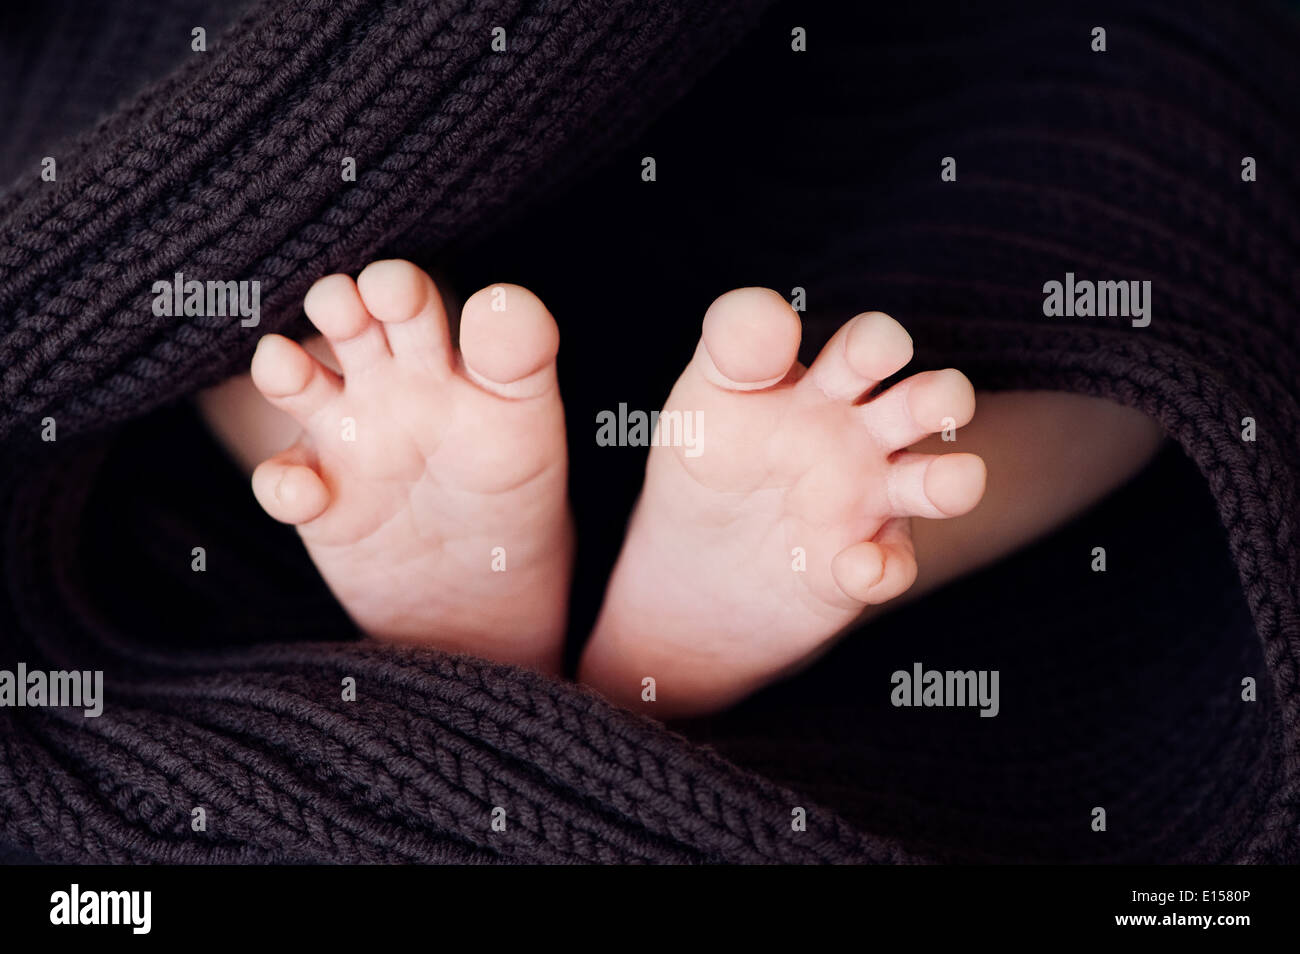 Bébé nouveau-né pieds sur couverture souple brun Banque D'Images